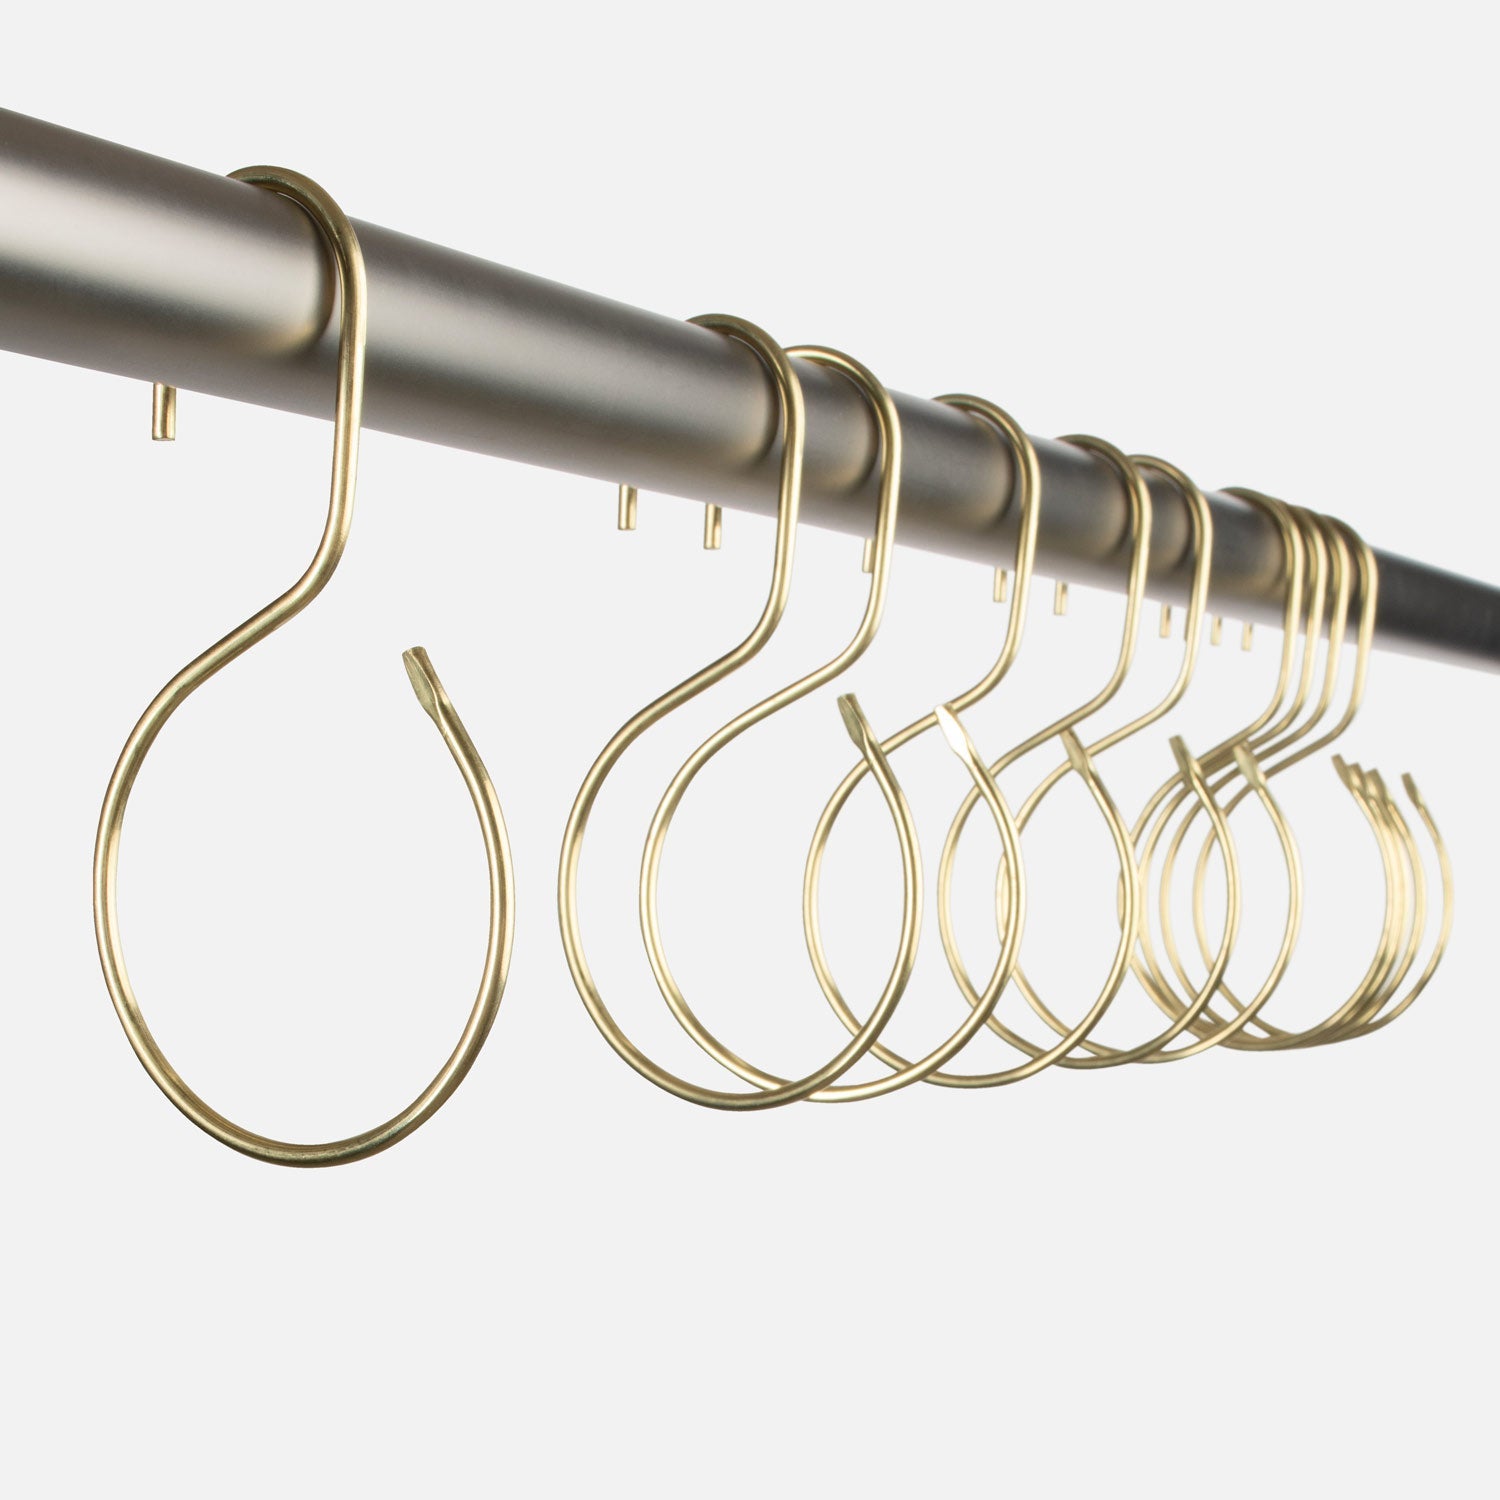 12 Glide Roller Shower Curtain Rings Hooks Clip Rod Stainless Steel Metal  Balls | eBay